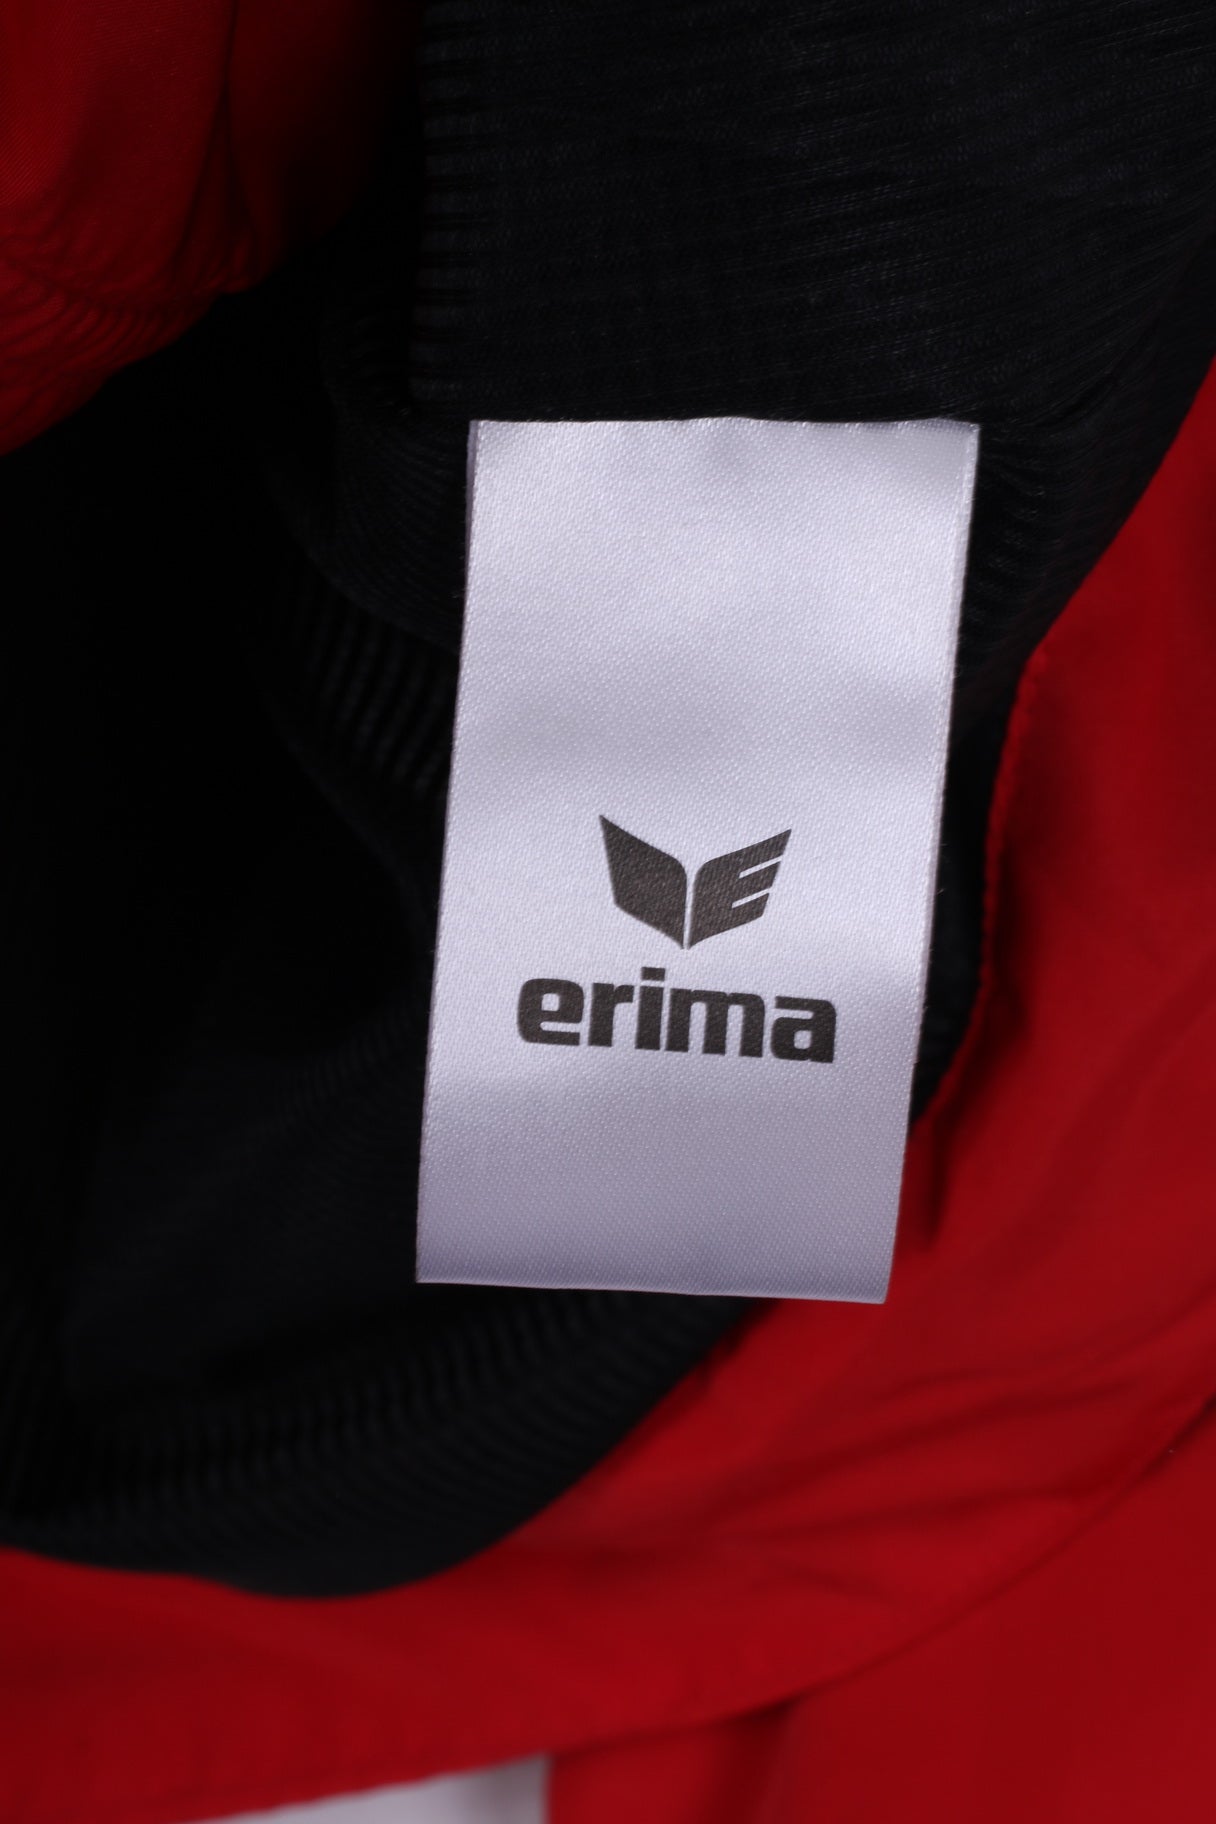 Erima Gesundheitsresort Königsberg Bad Schönau Veste légère pour femme 12 L avec fermeture éclair complète Rouge Sportswear 